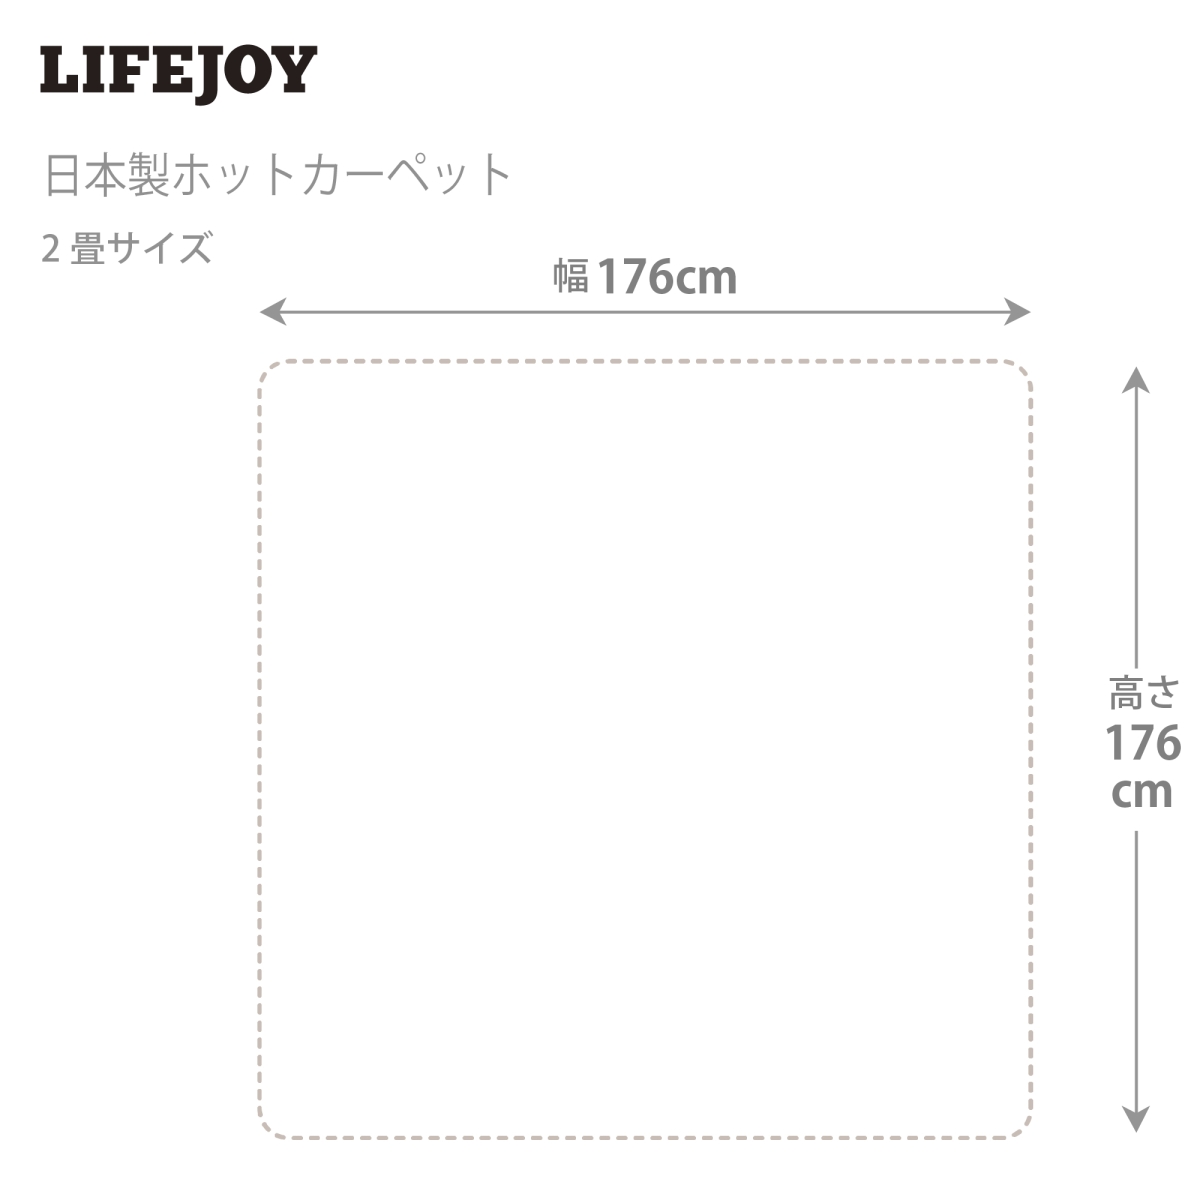 日本製 電気カーペット 2畳 176cm×176cm ホットカーペット グレー